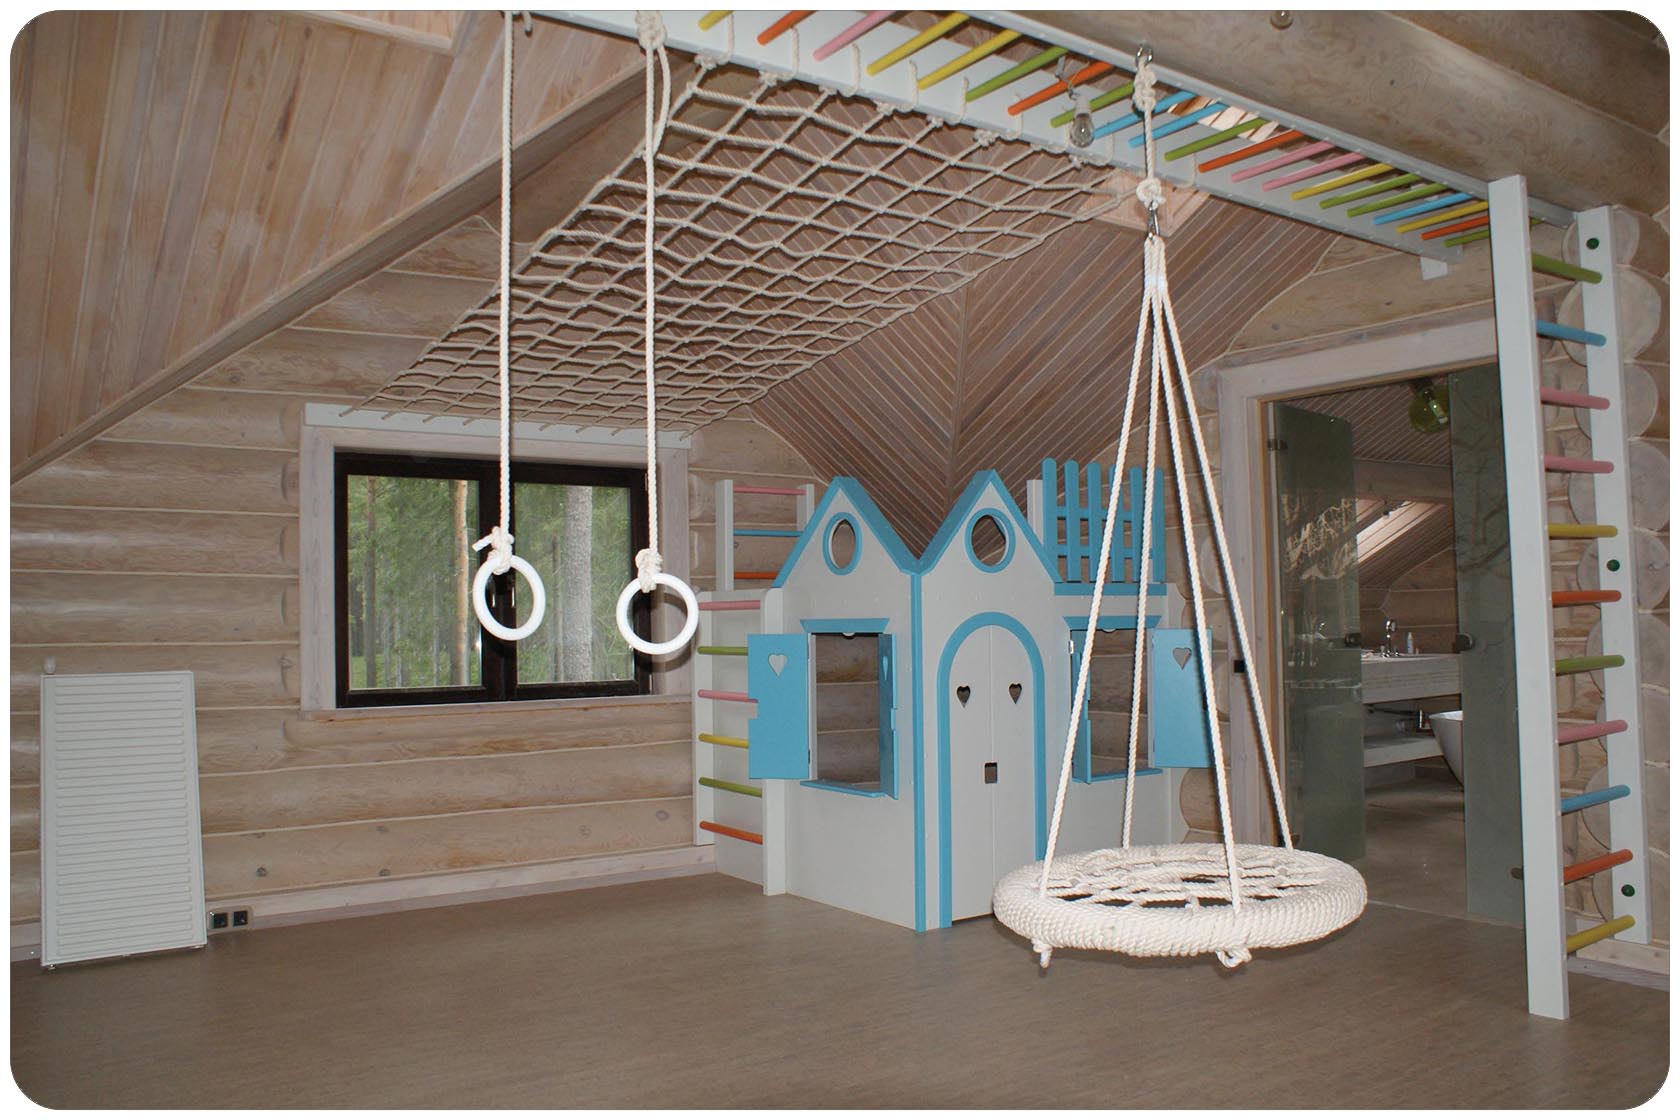 Изготовление детских игровых комнат с мебелью, комплексами, домиками на заказ в компании МнеДомик.